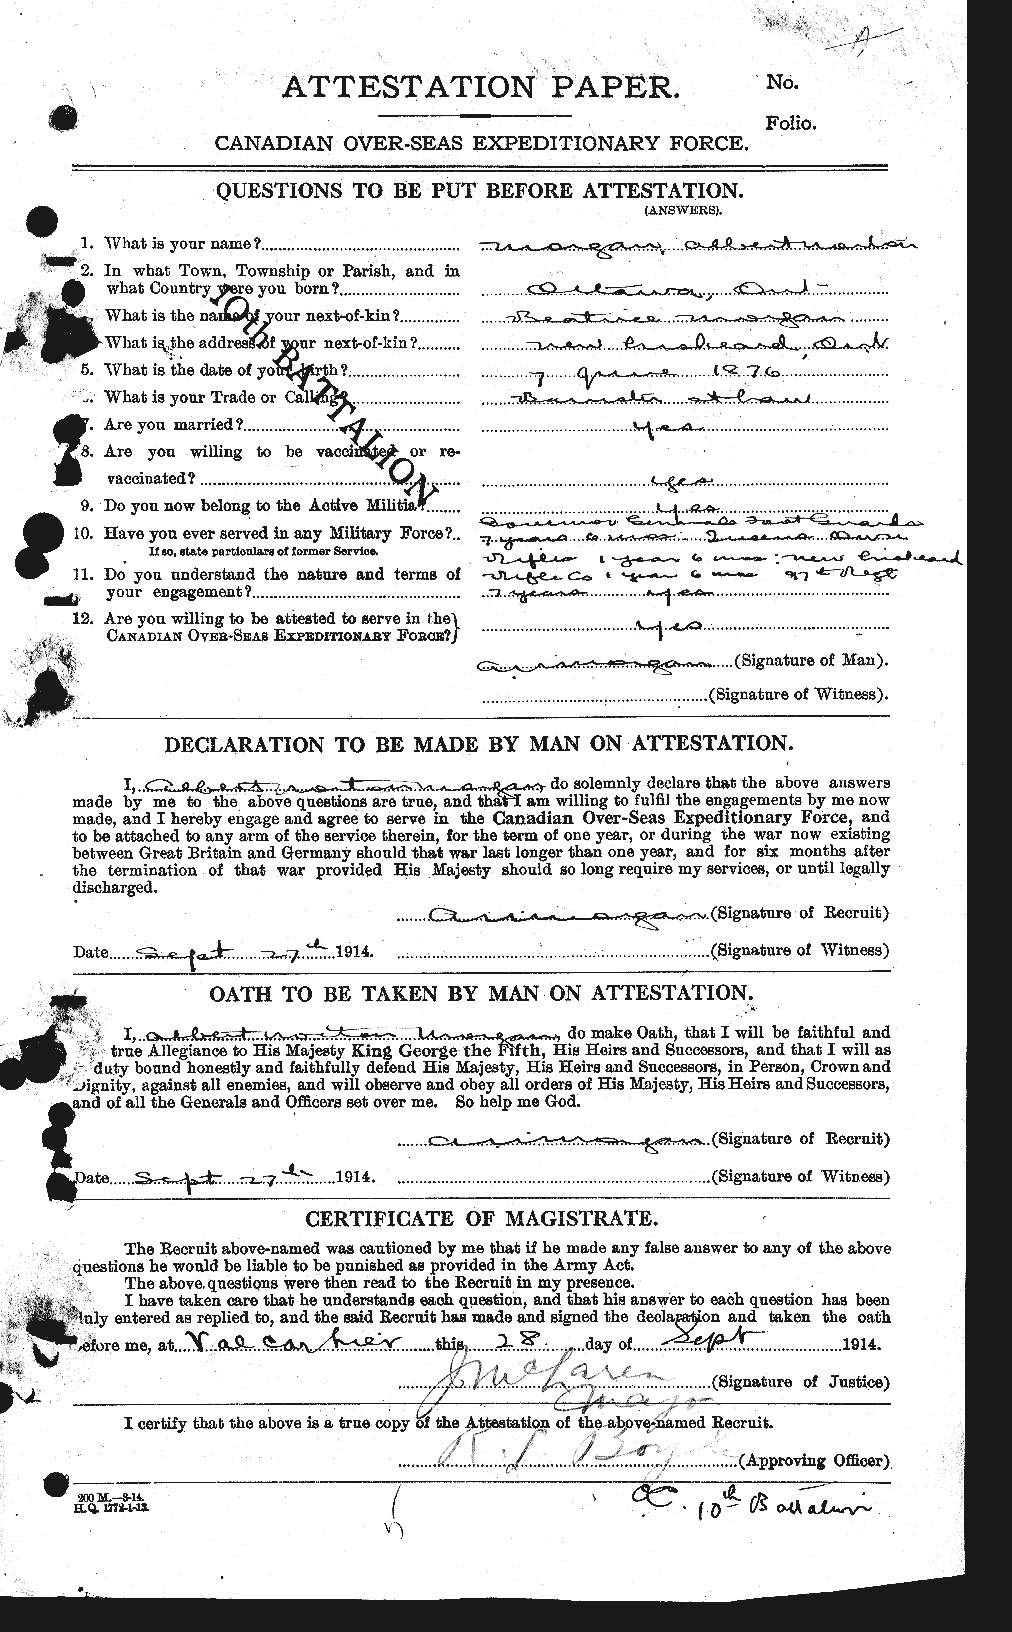 Dossiers du Personnel de la Première Guerre mondiale - CEC 507467a